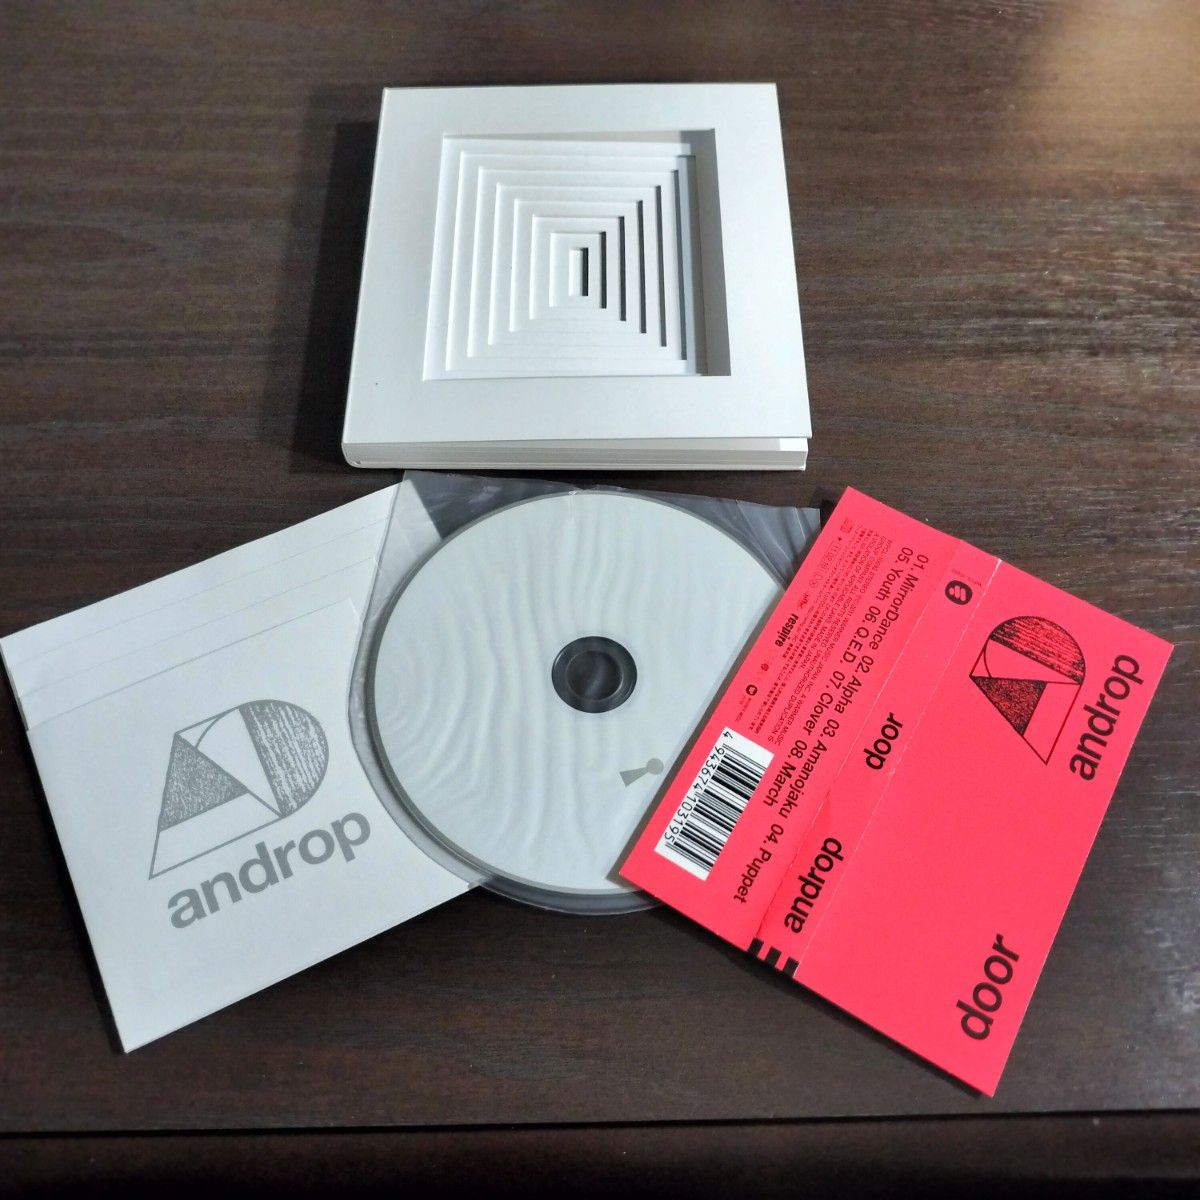 【即日発送】androp CD10枚セット